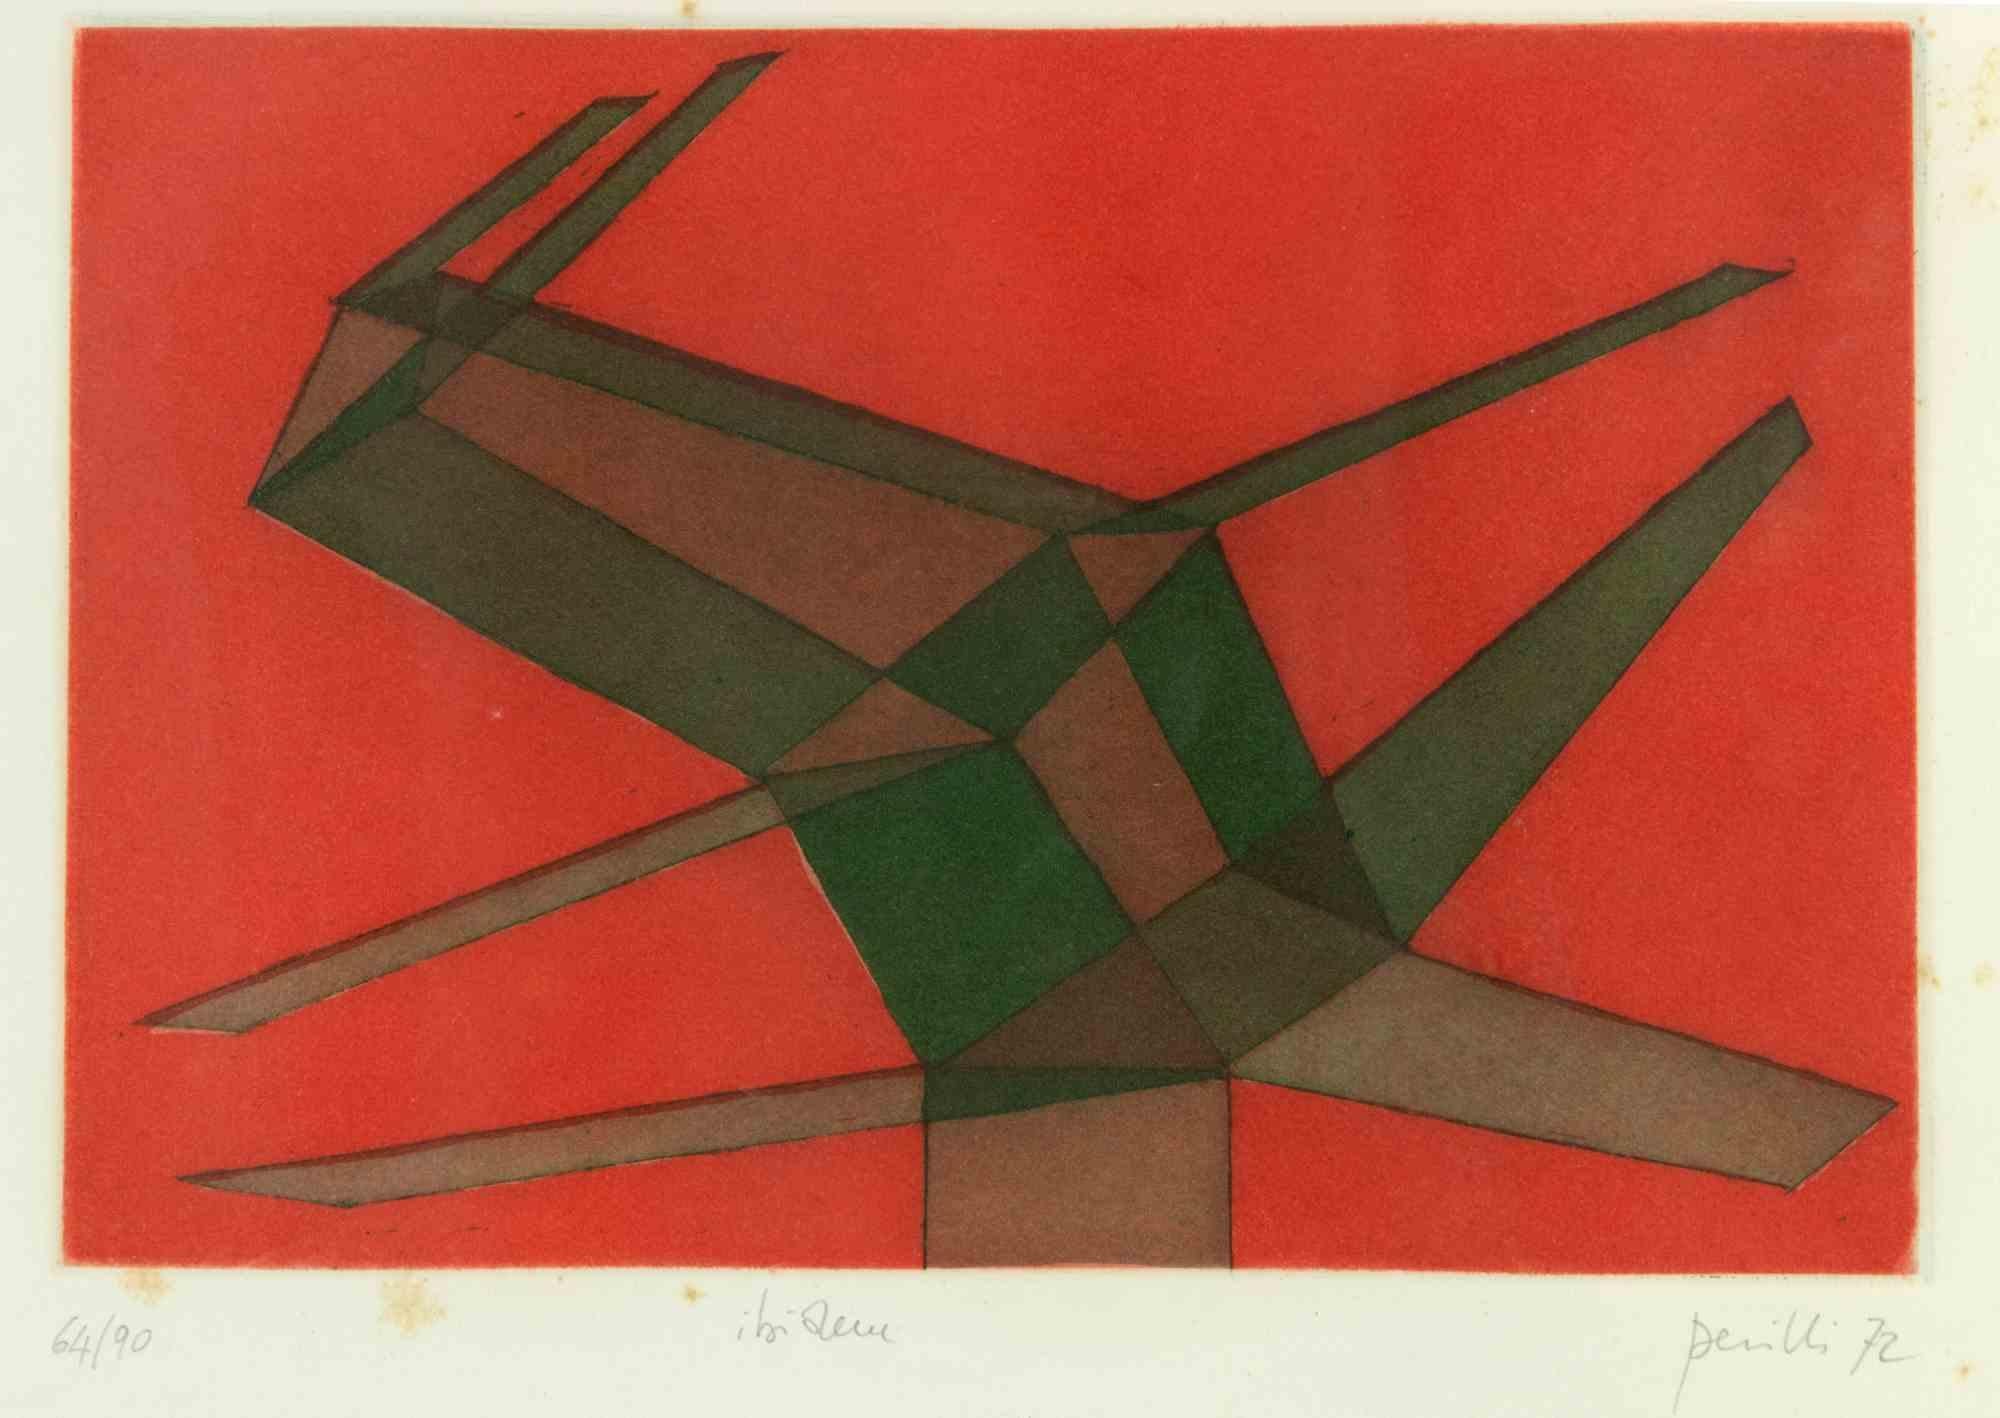 Ibidem est une œuvre d'art contemporain réalisée par Achille Perilli en 1972.

Lithographie en couleurs mélangées.

Signé à la main, daté et numéroté dans la marge inférieure.

Édition de 64/90. 

Titré en bas au centre.

Inclut le